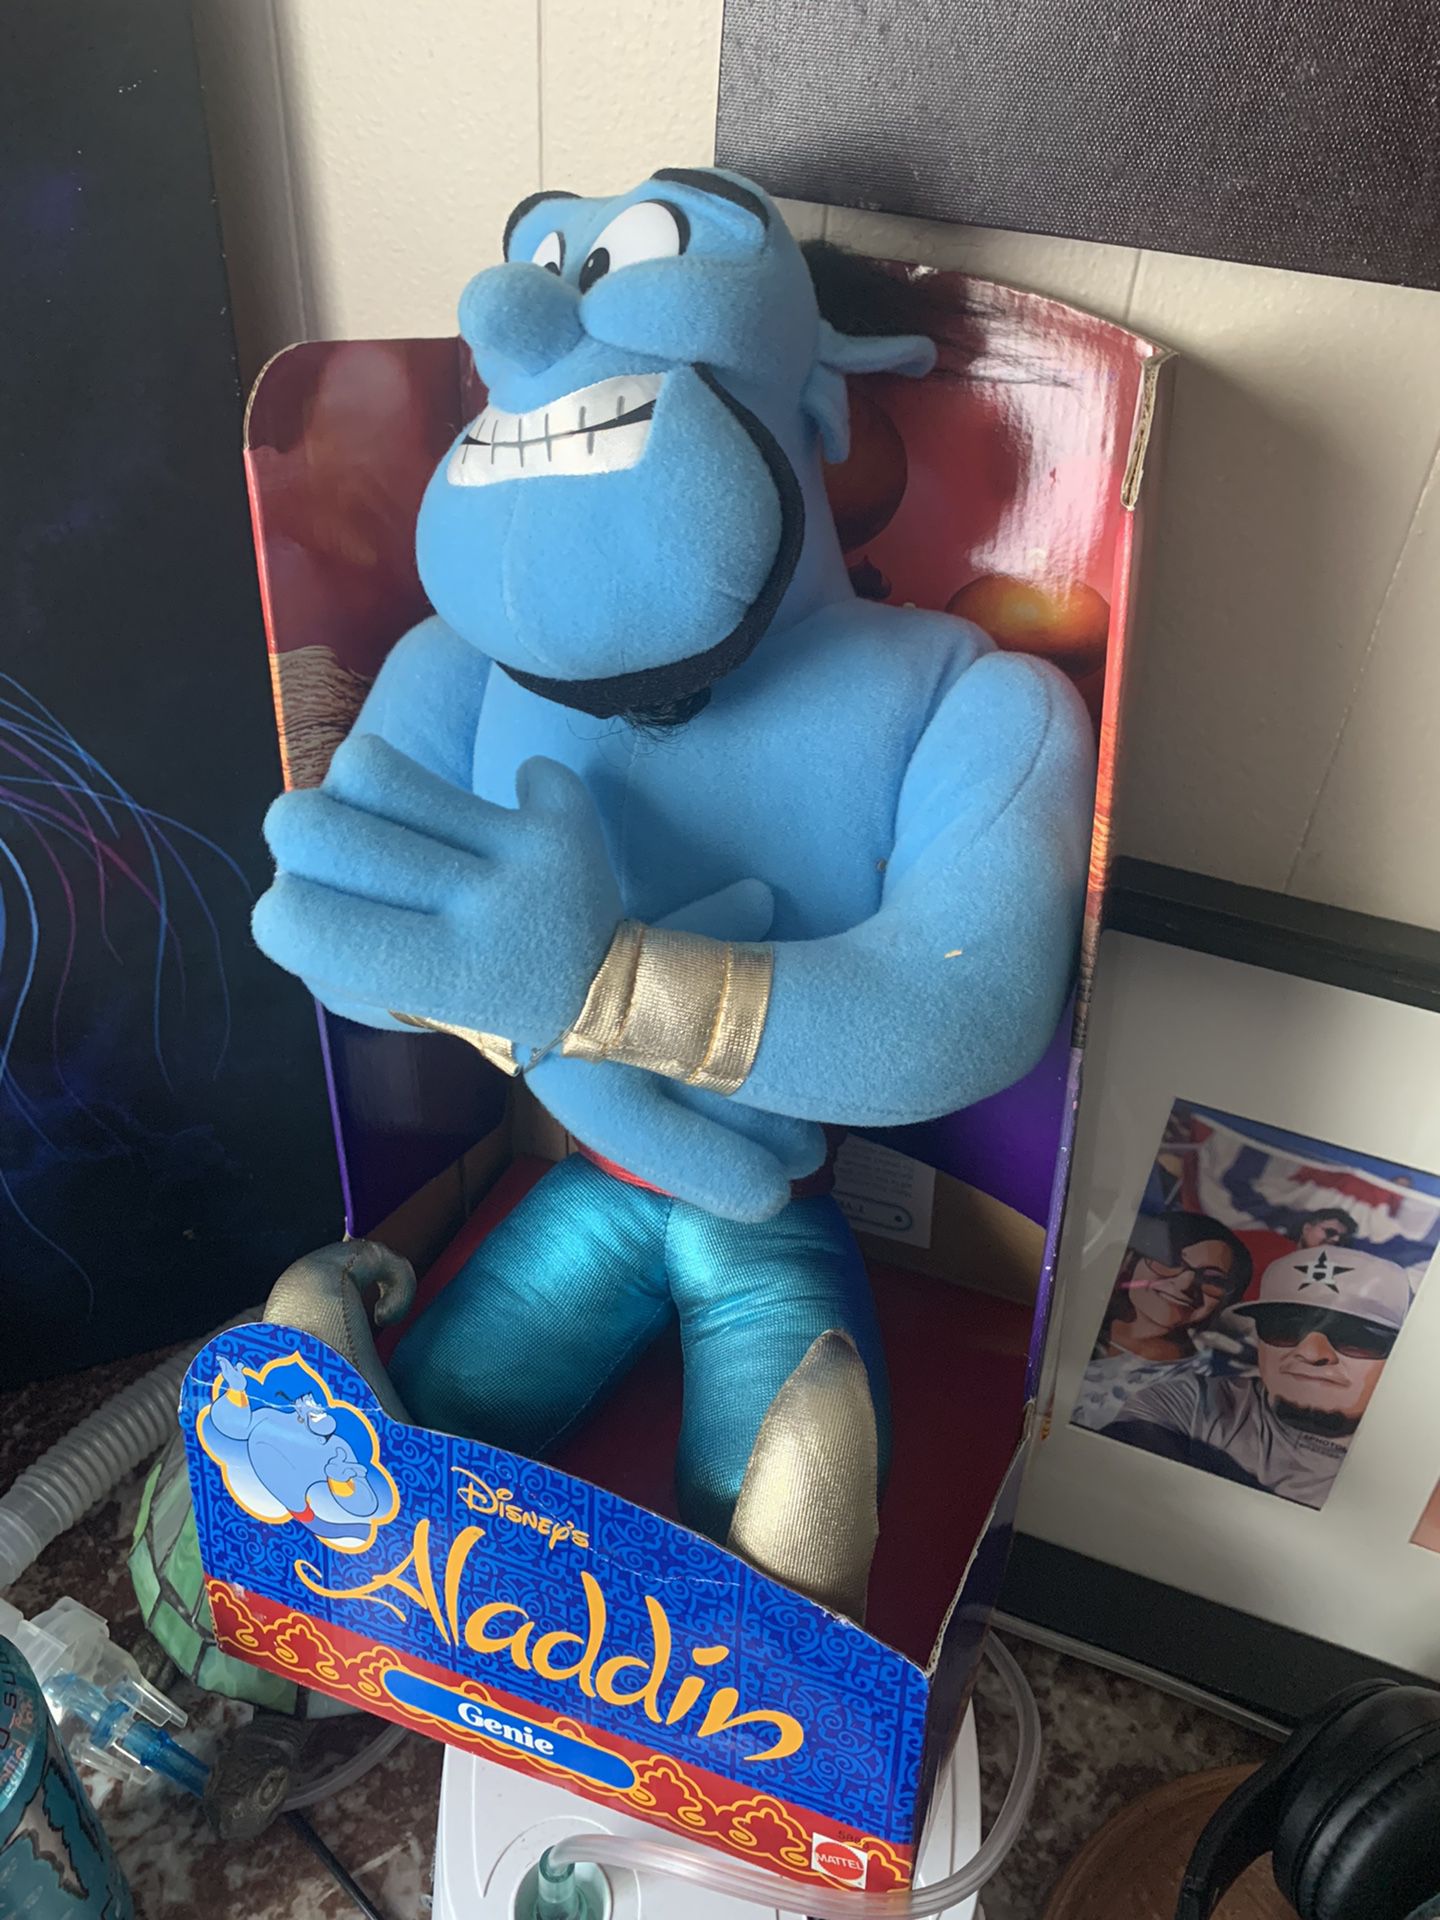 1992 Genie from Aladdin 